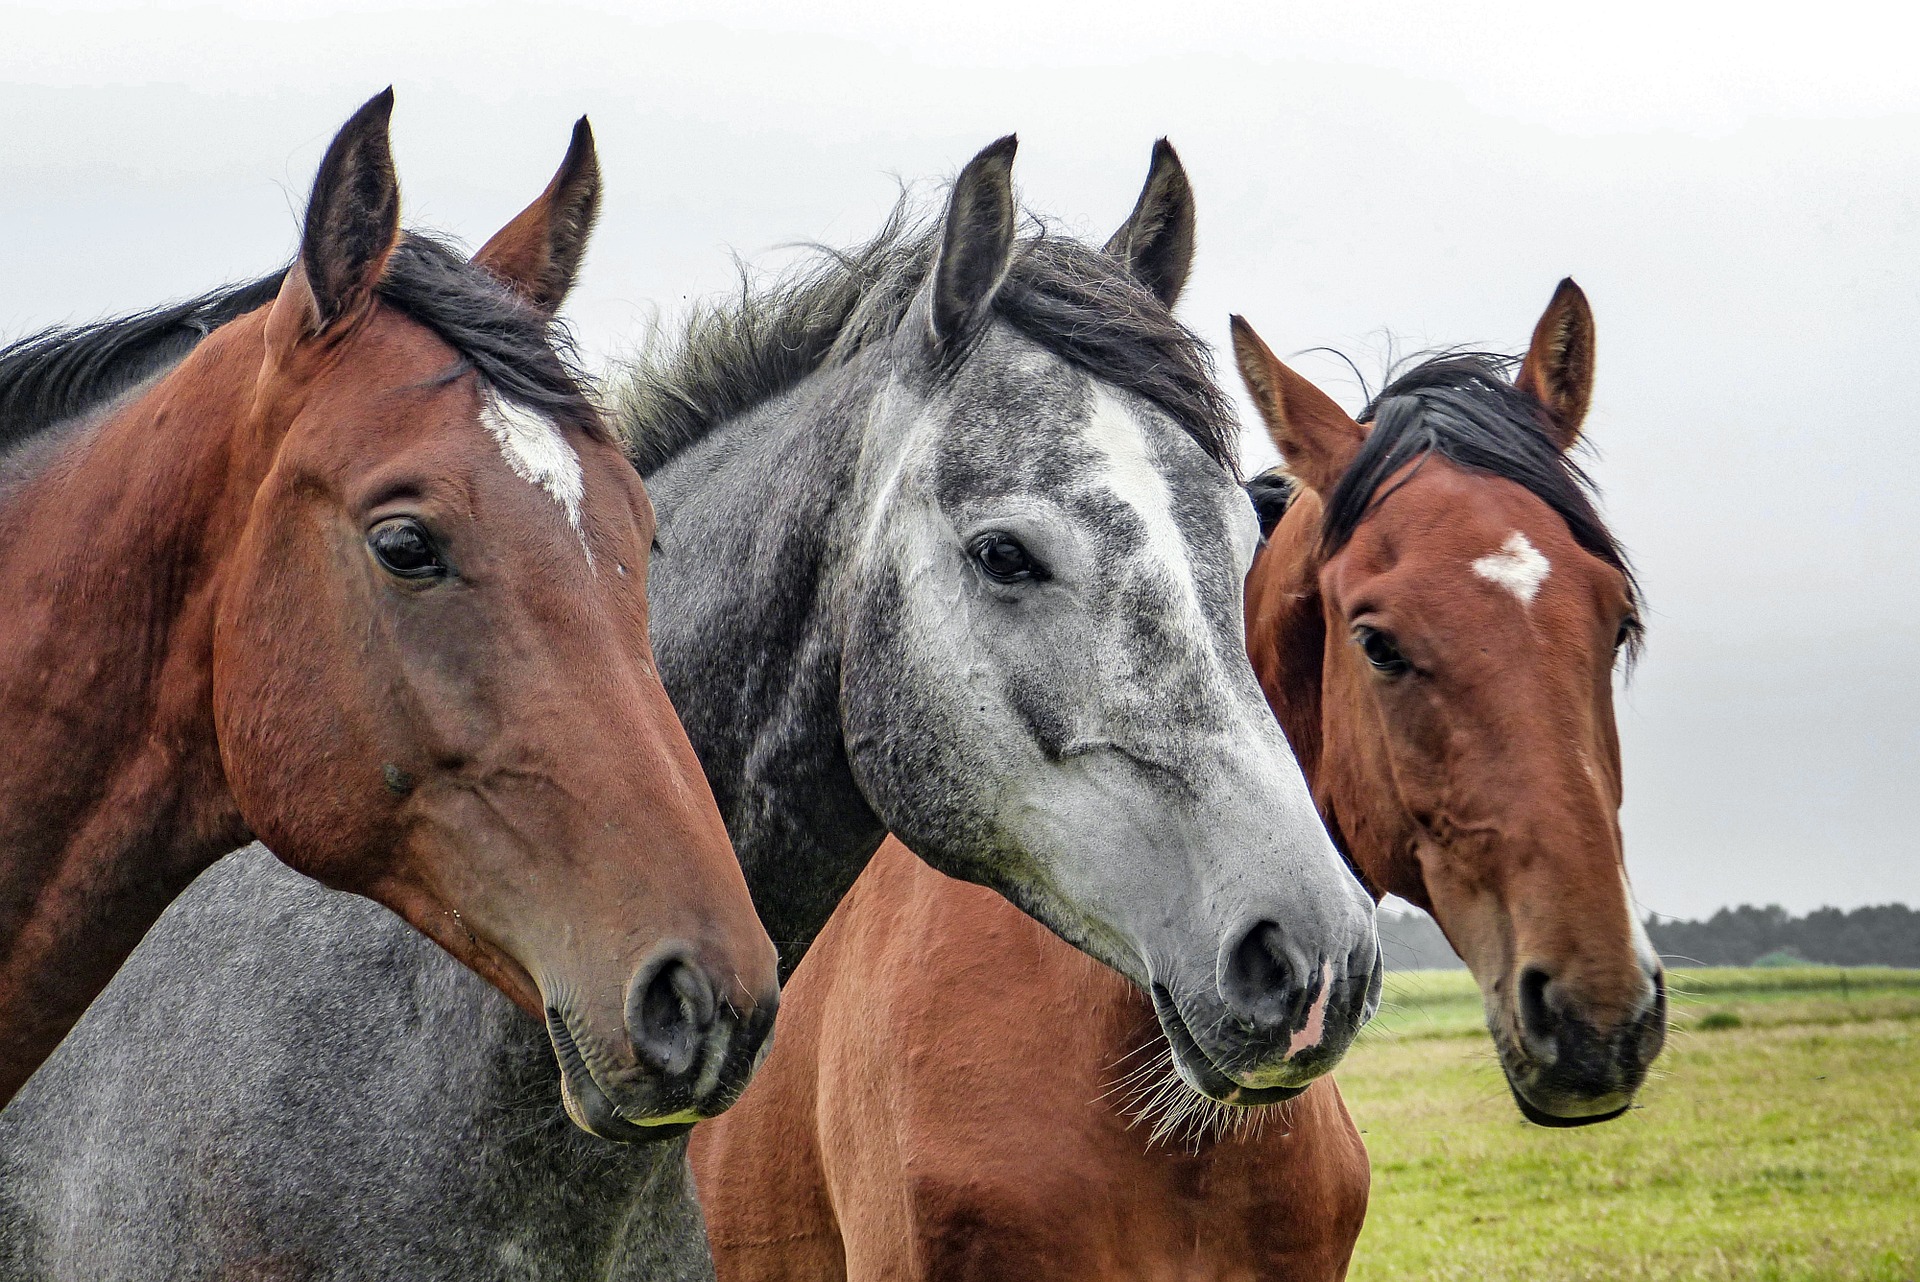 Erziehung: Wie lernen Pferde?